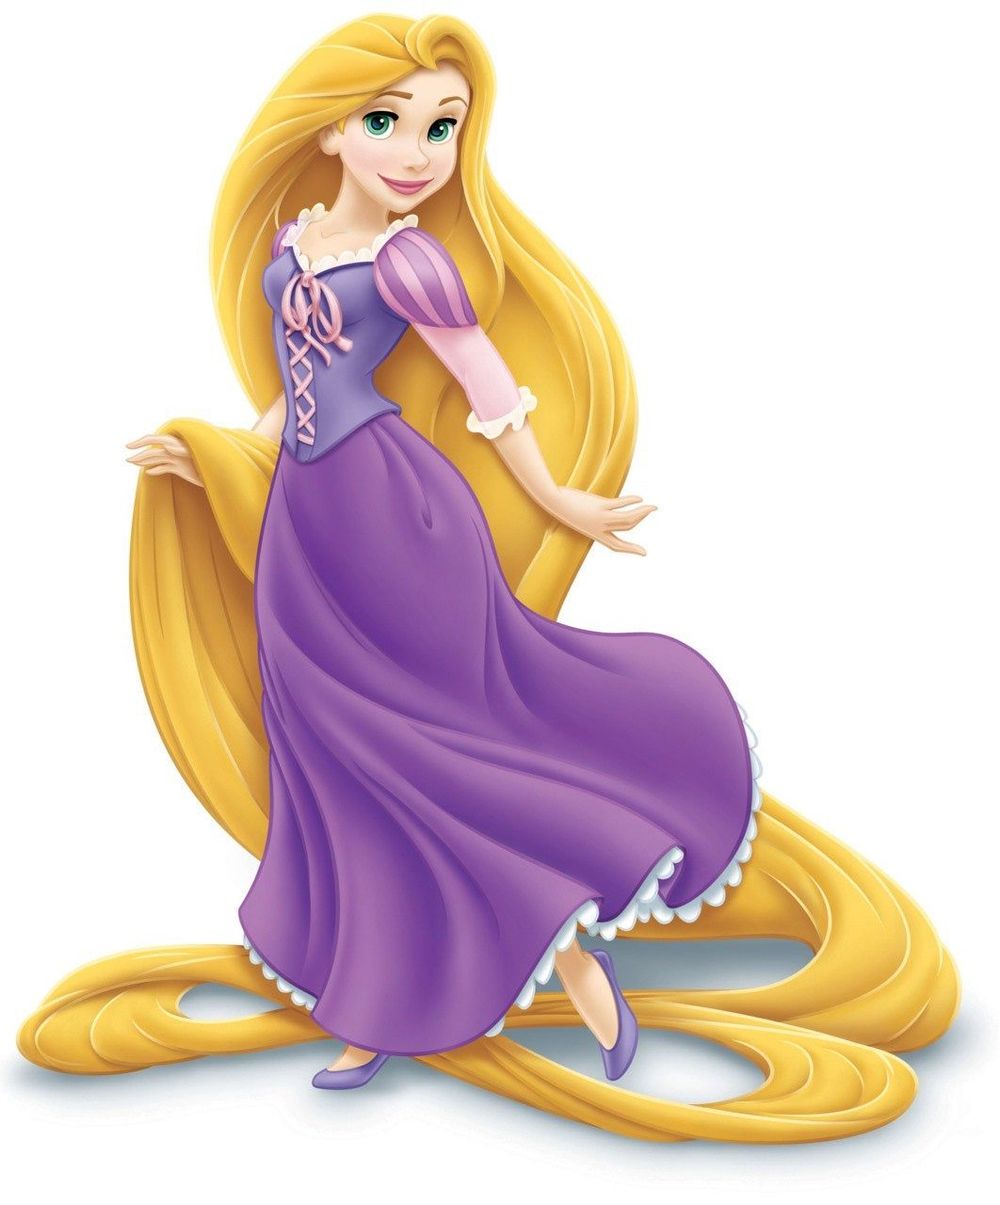  
Phiên bản gốc của Rapunzel. (Ảnh: T.H)